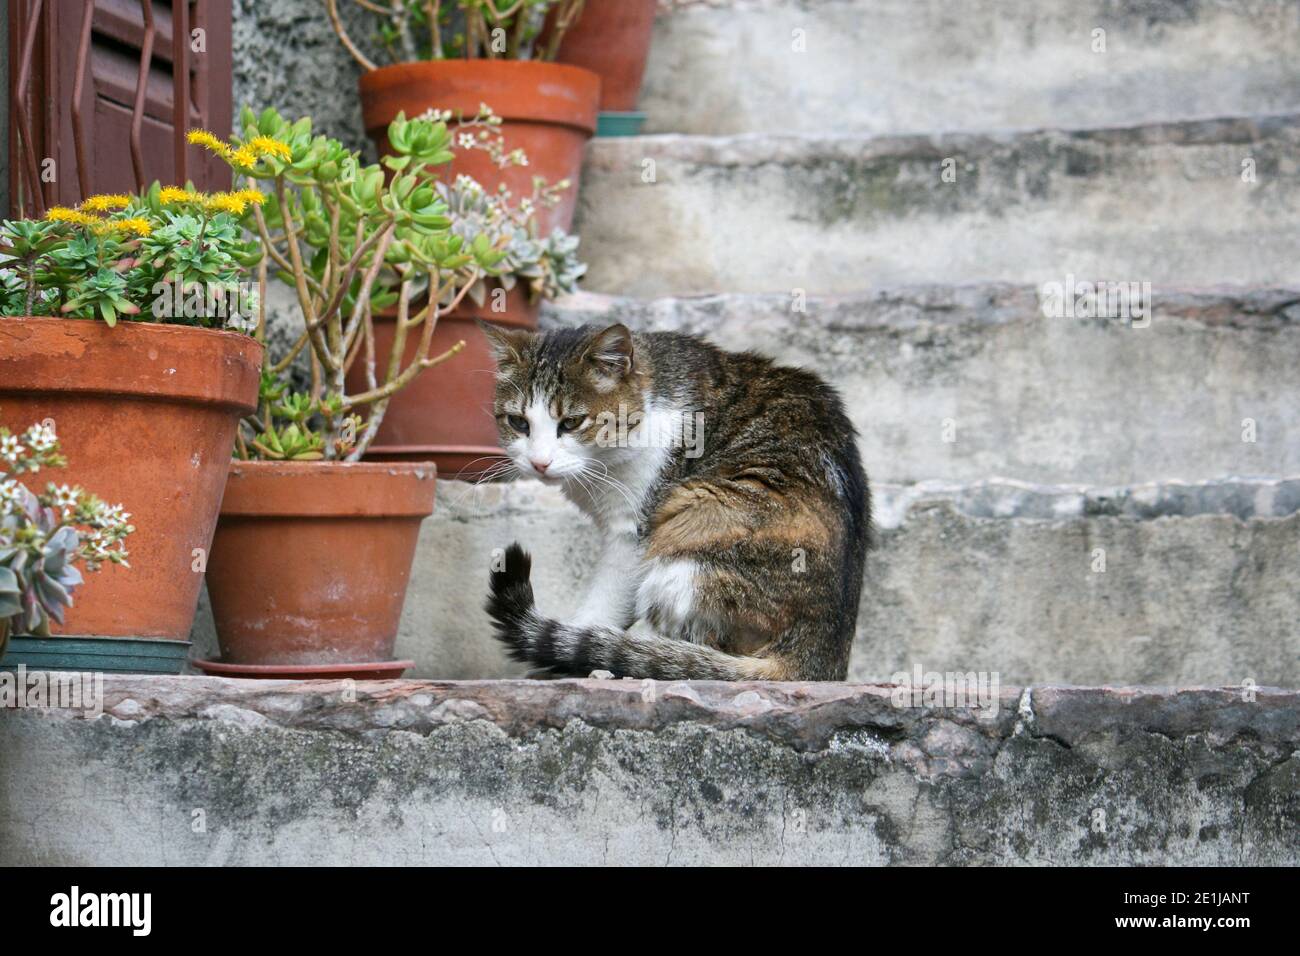 Le joli chat était assis sur un escalier sur le lac de Garde. Elle avait quelque chose dans son foyer et n'a pas remarqué les passants. Banque D'Images